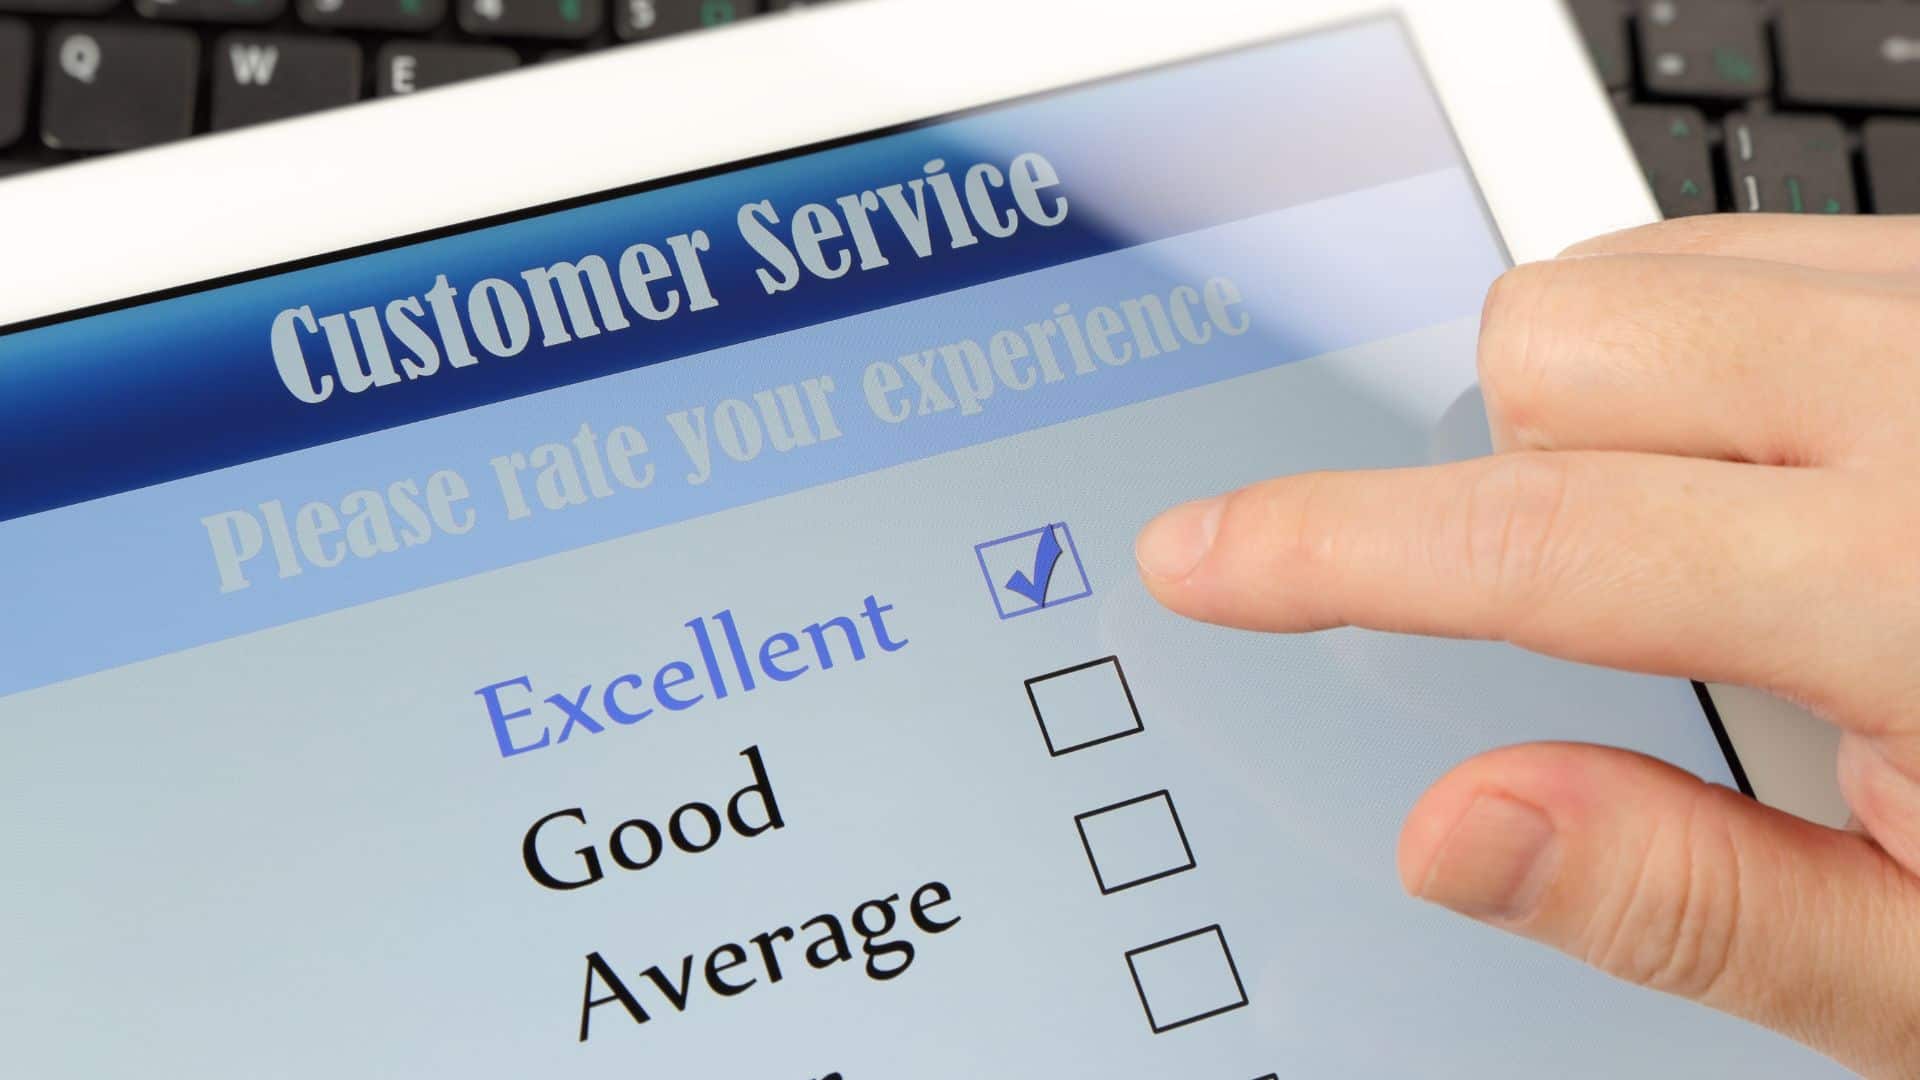 a survey on providing excellent service to clients